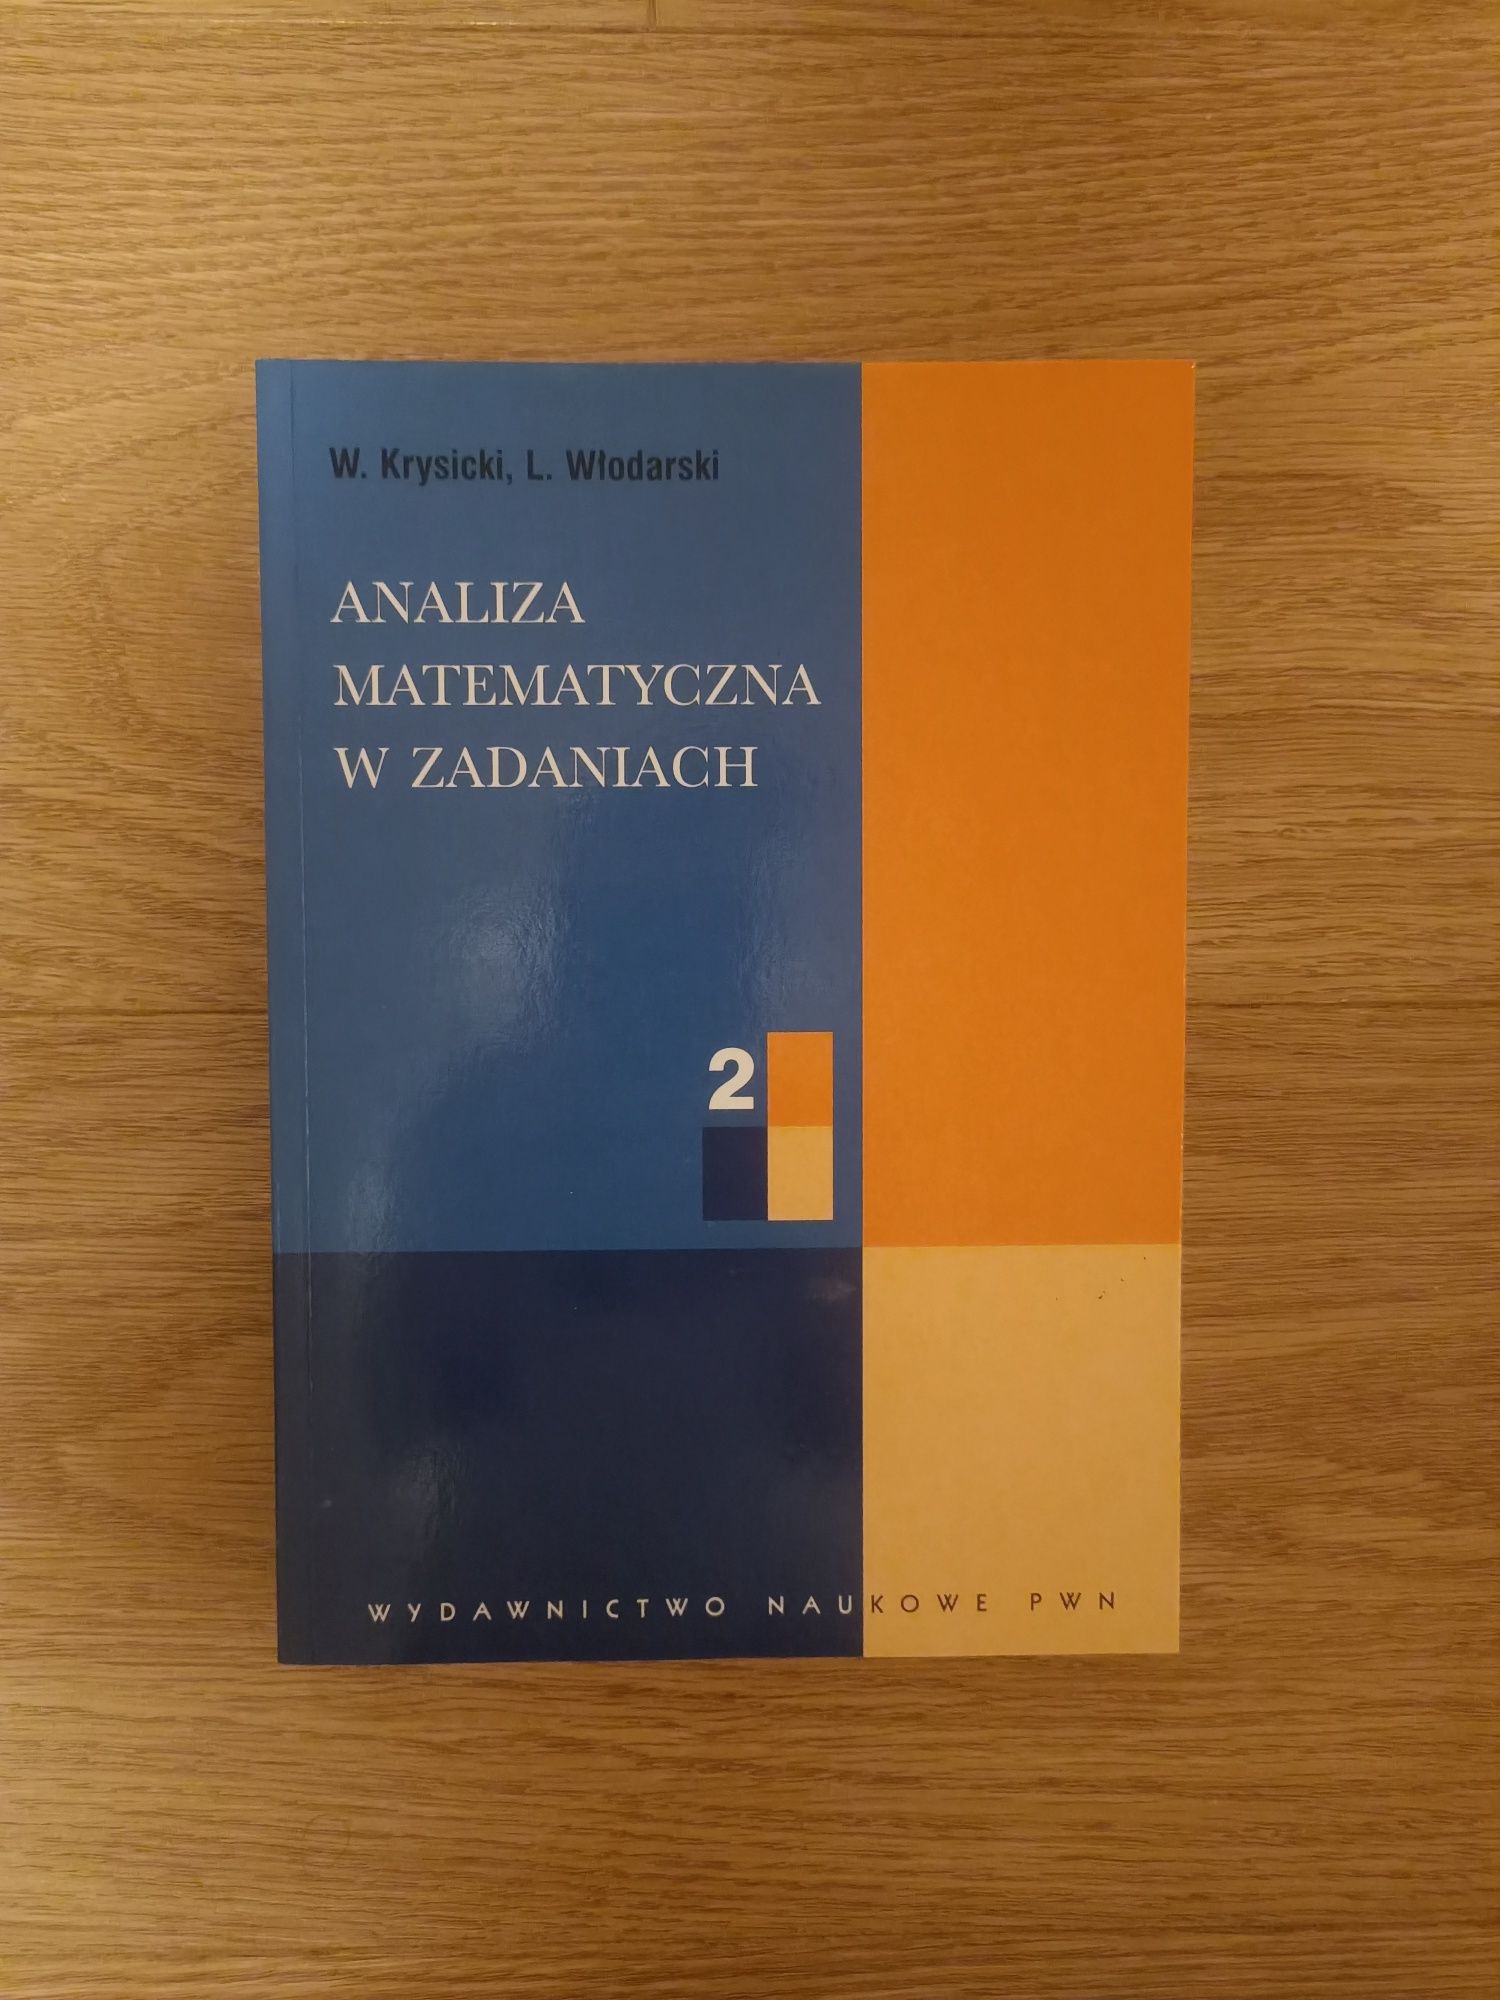 Analiza matematyczna w zadaniach 2, W. Krysicki, L. Włodarski